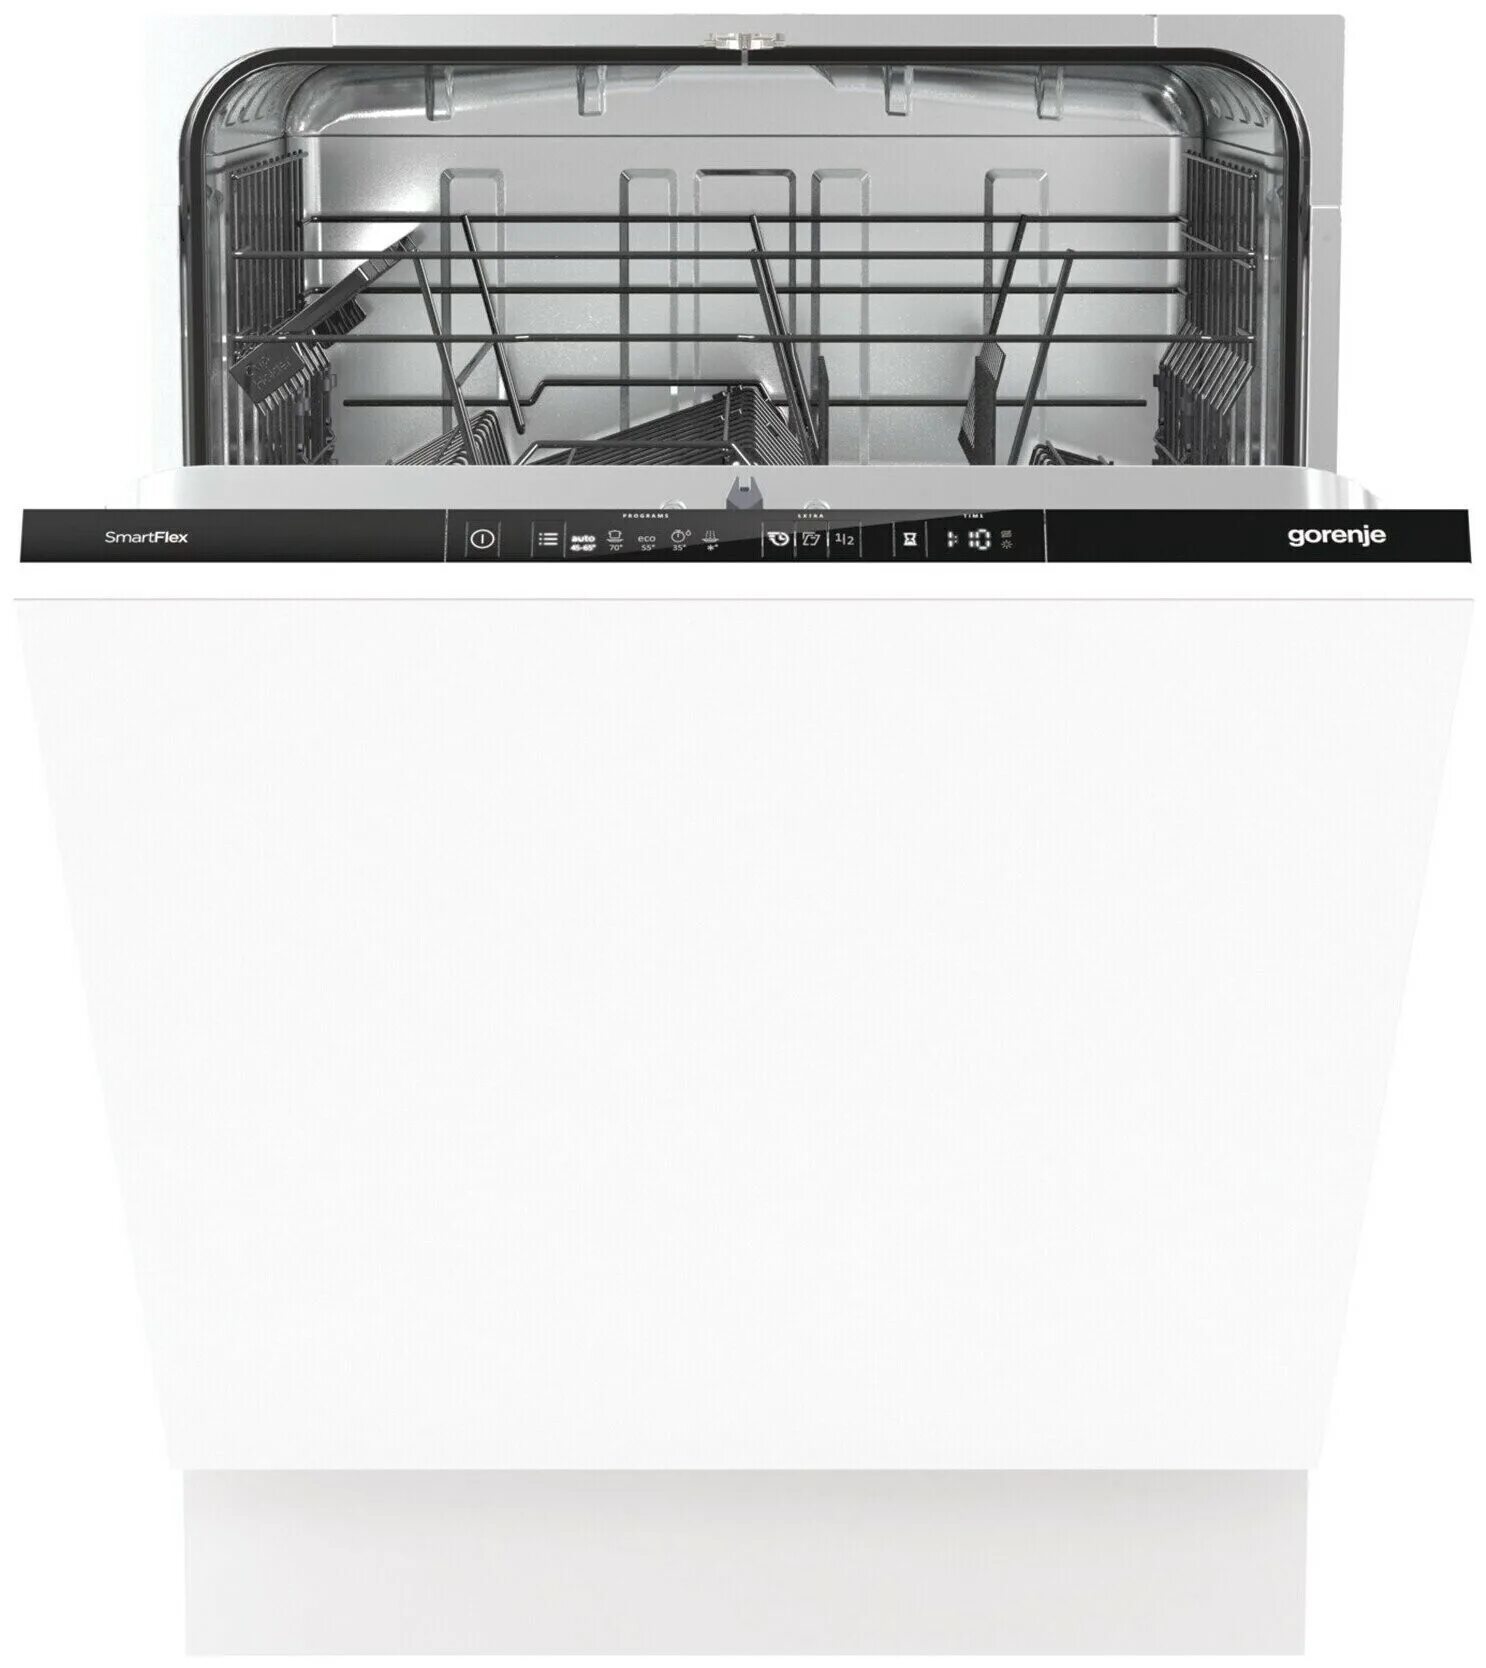 Посудомоечная машина горение встраиваемая 60 см. Посудомоечная машина Gorenje mgv6316. Встраиваемая посудомоечная машина Beko dis 26021. Gorenje gv671c60. Посудомоечная машина Gorenje gv60oraw.